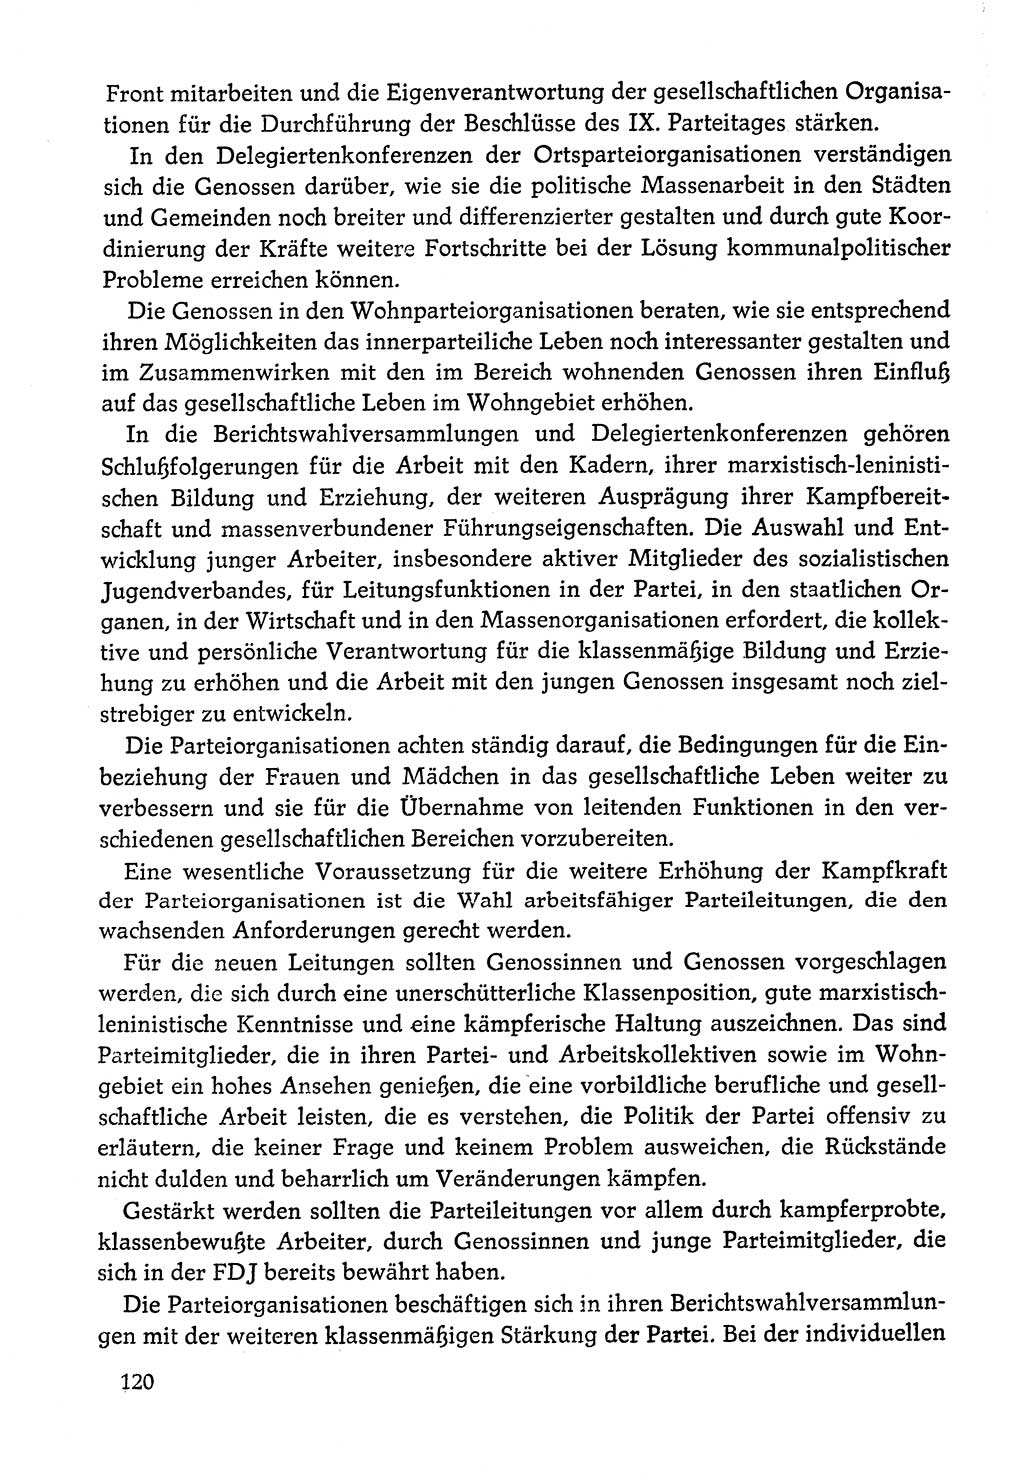 Dokumente der Sozialistischen Einheitspartei Deutschlands (SED) [Deutsche Demokratische Republik (DDR)] 1978-1979, Seite 120 (Dok. SED DDR 1978-1979, S. 120)